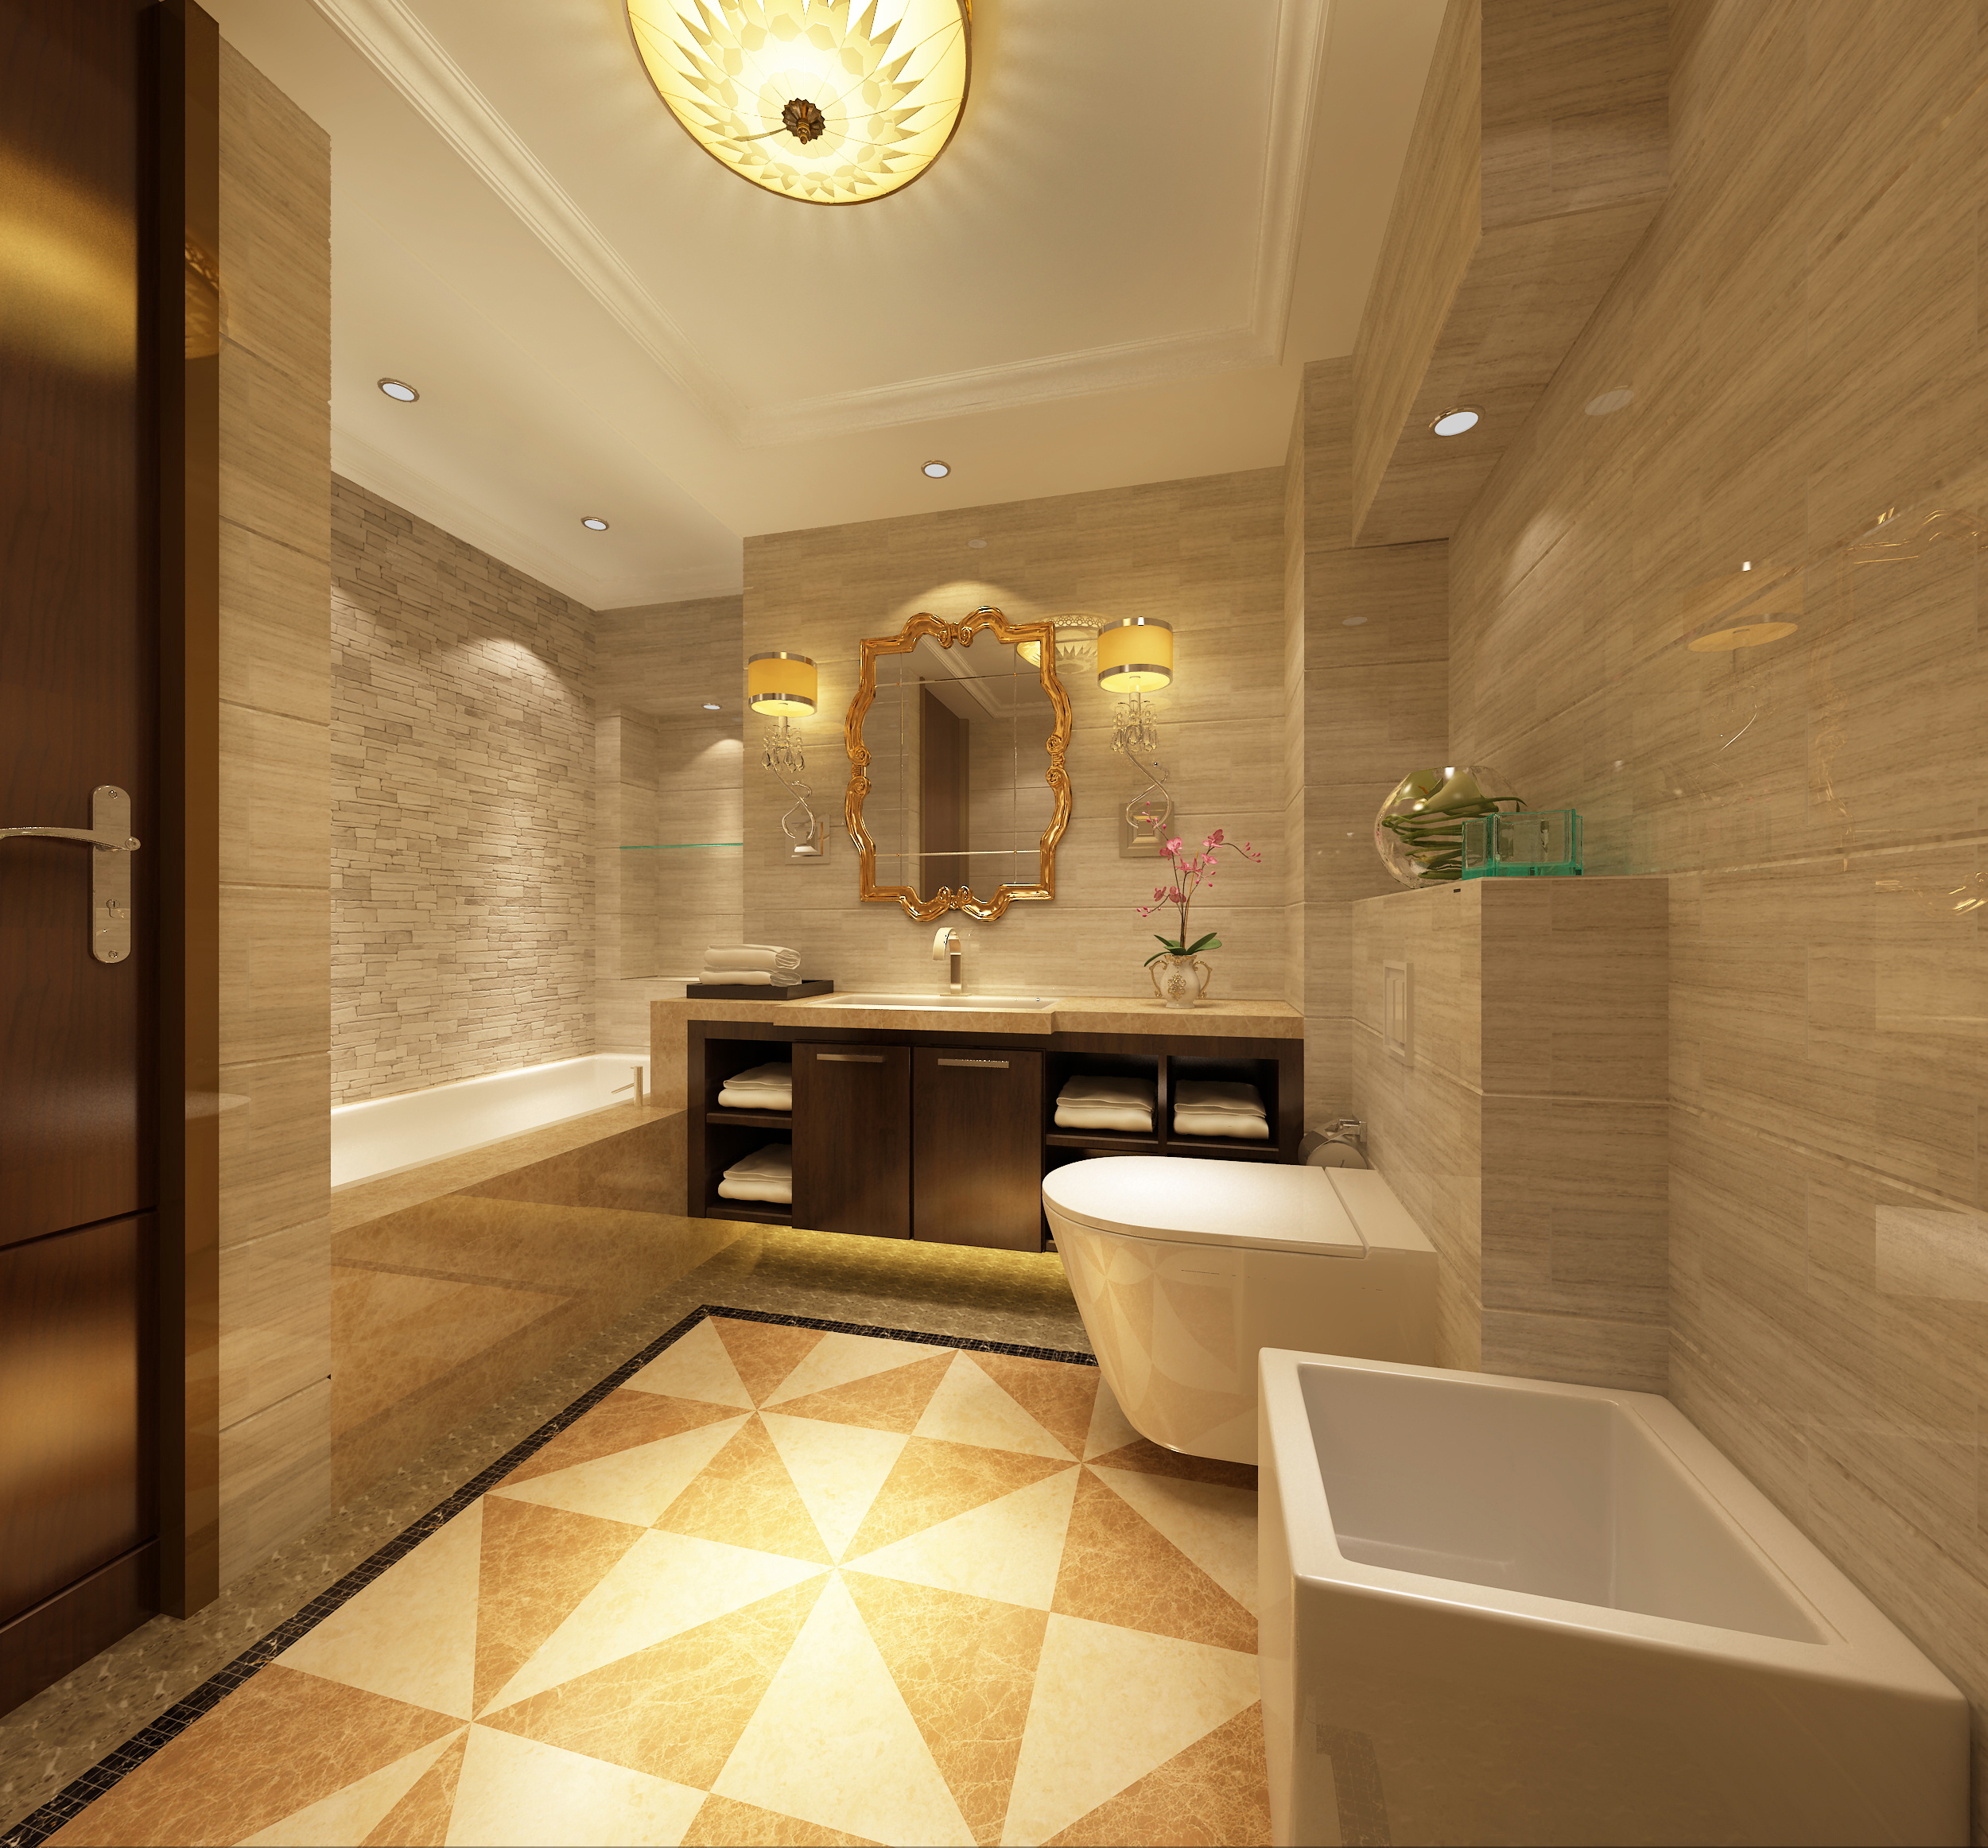 提拉米苏 中式 卫生间 卫生间图片来自北京合建装饰单聪聪在提拉米苏的分享